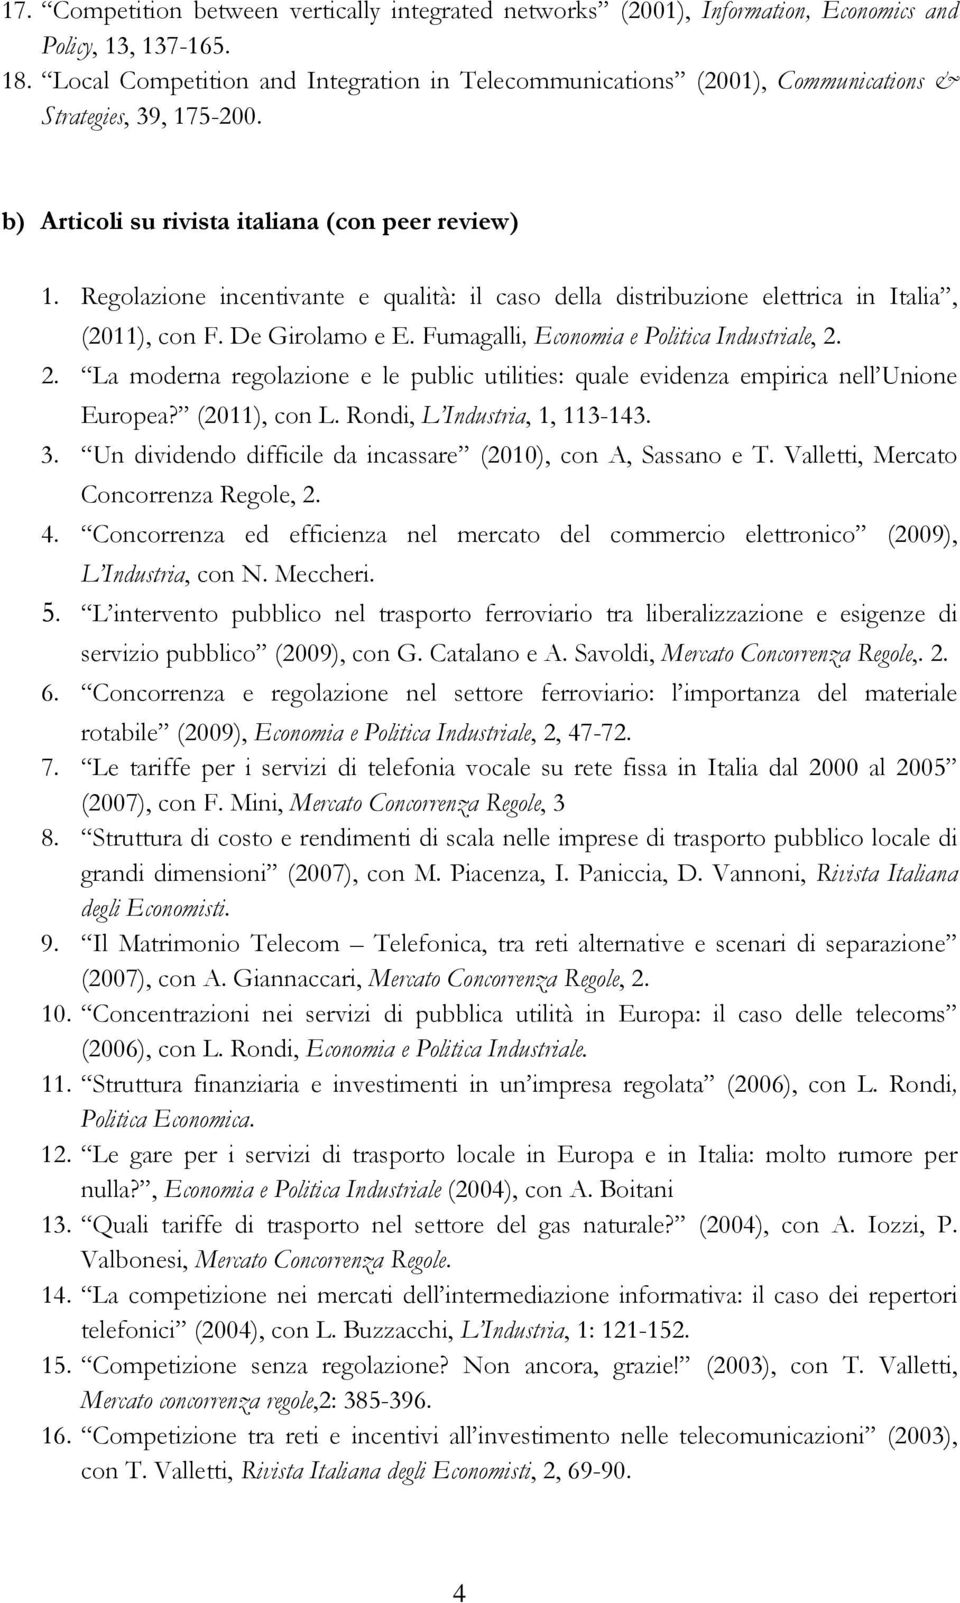 Regolazione incentivante e qualità: il caso della distribuzione elettrica in Italia, (2011), con F. De Girolamo e E. Fumagalli, Economia e Politica Industriale, 2.